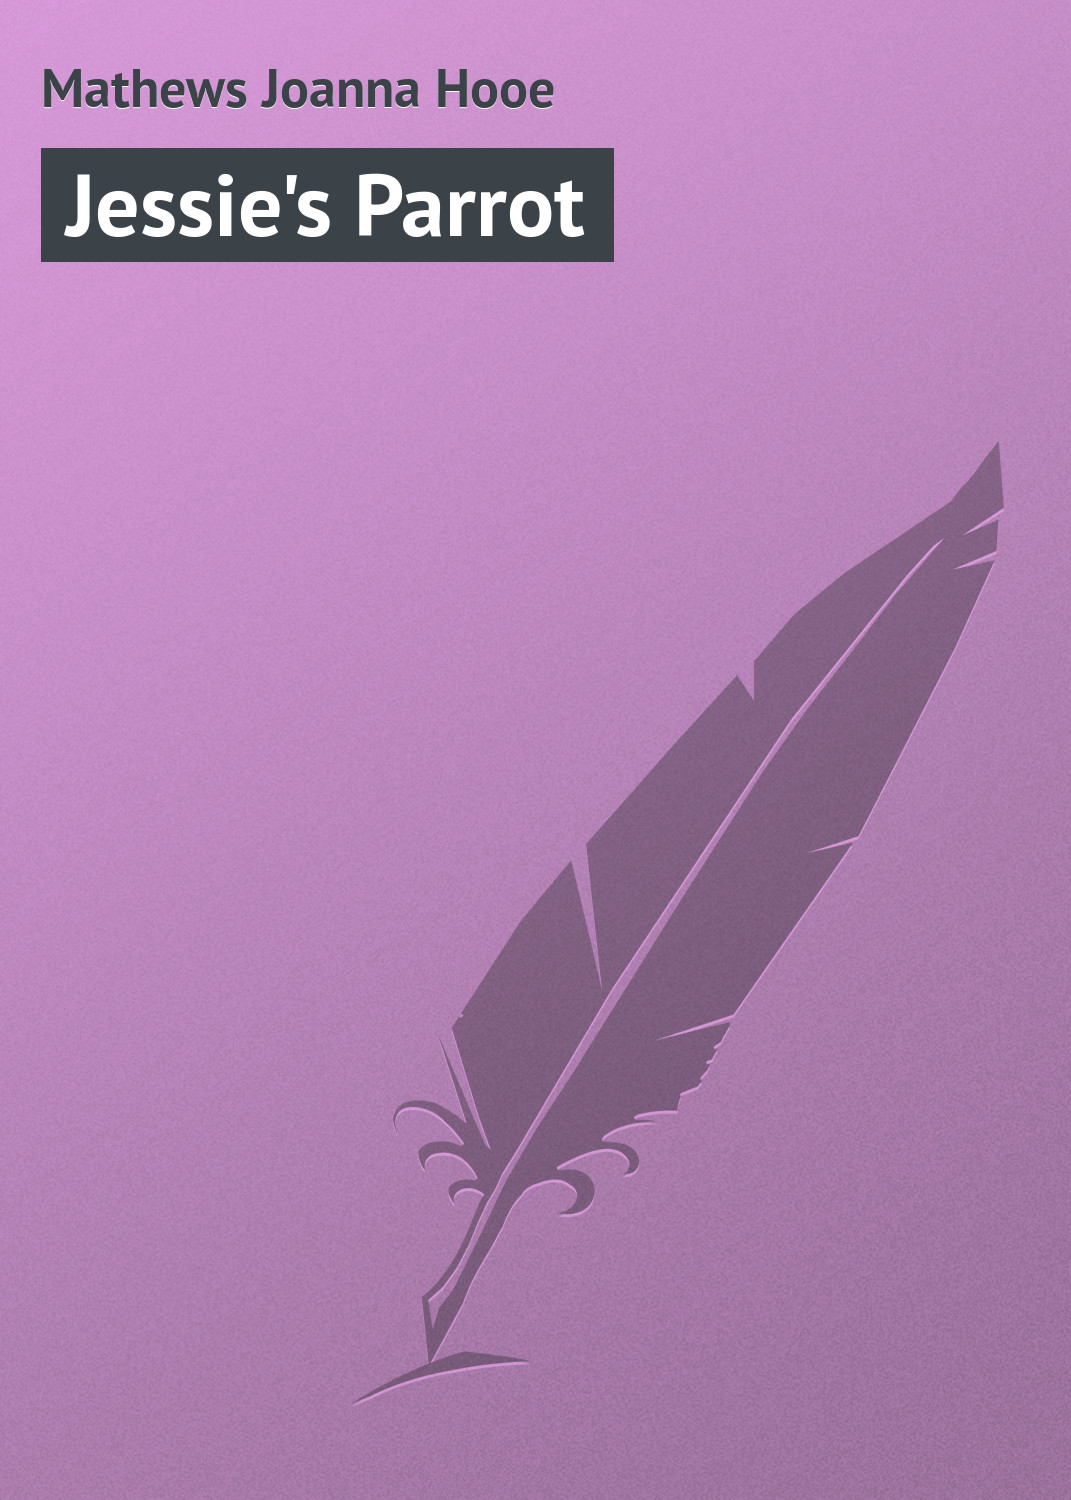 Книга Jessie's Parrot из серии , созданная Joanna Mathews, может относится к жанру Зарубежная классика, Зарубежные детские книги. Стоимость электронной книги Jessie's Parrot с идентификатором 23166427 составляет 5.99 руб.